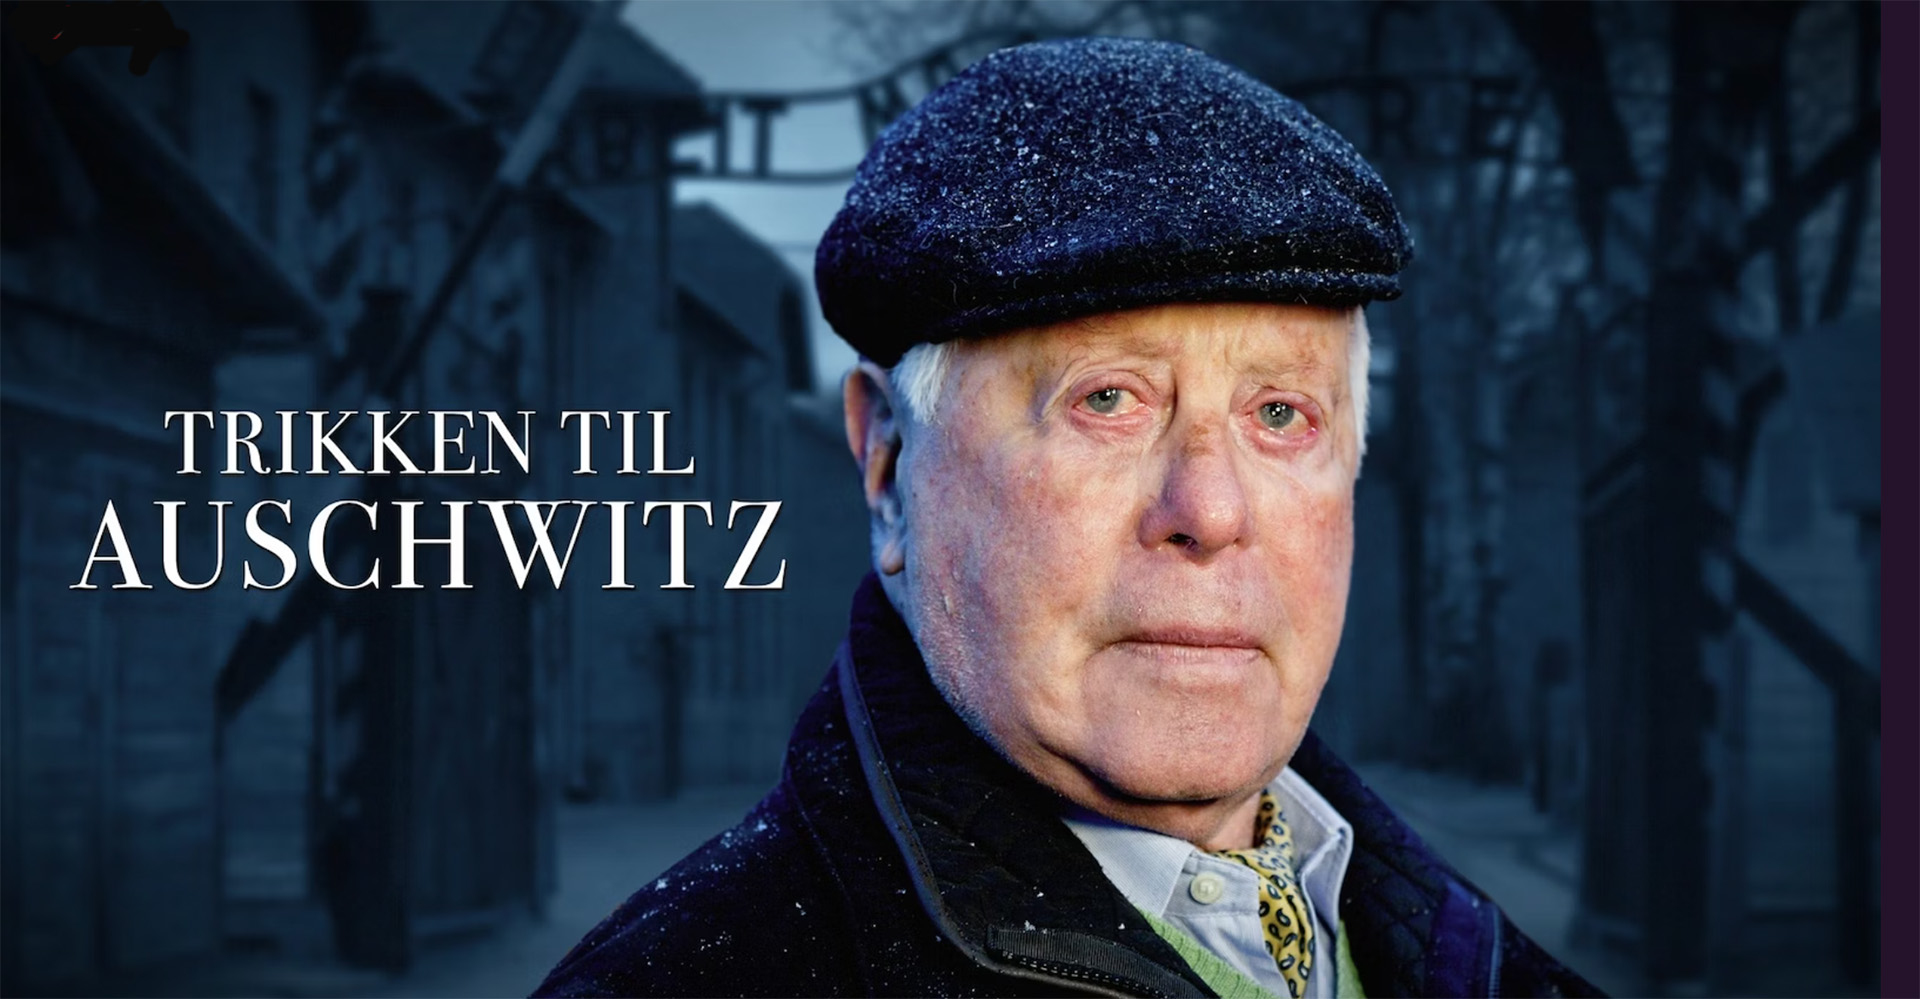 Eldre mann med hatt, alvorlig uttrykk, teksten "Trikken til Auschwitz"